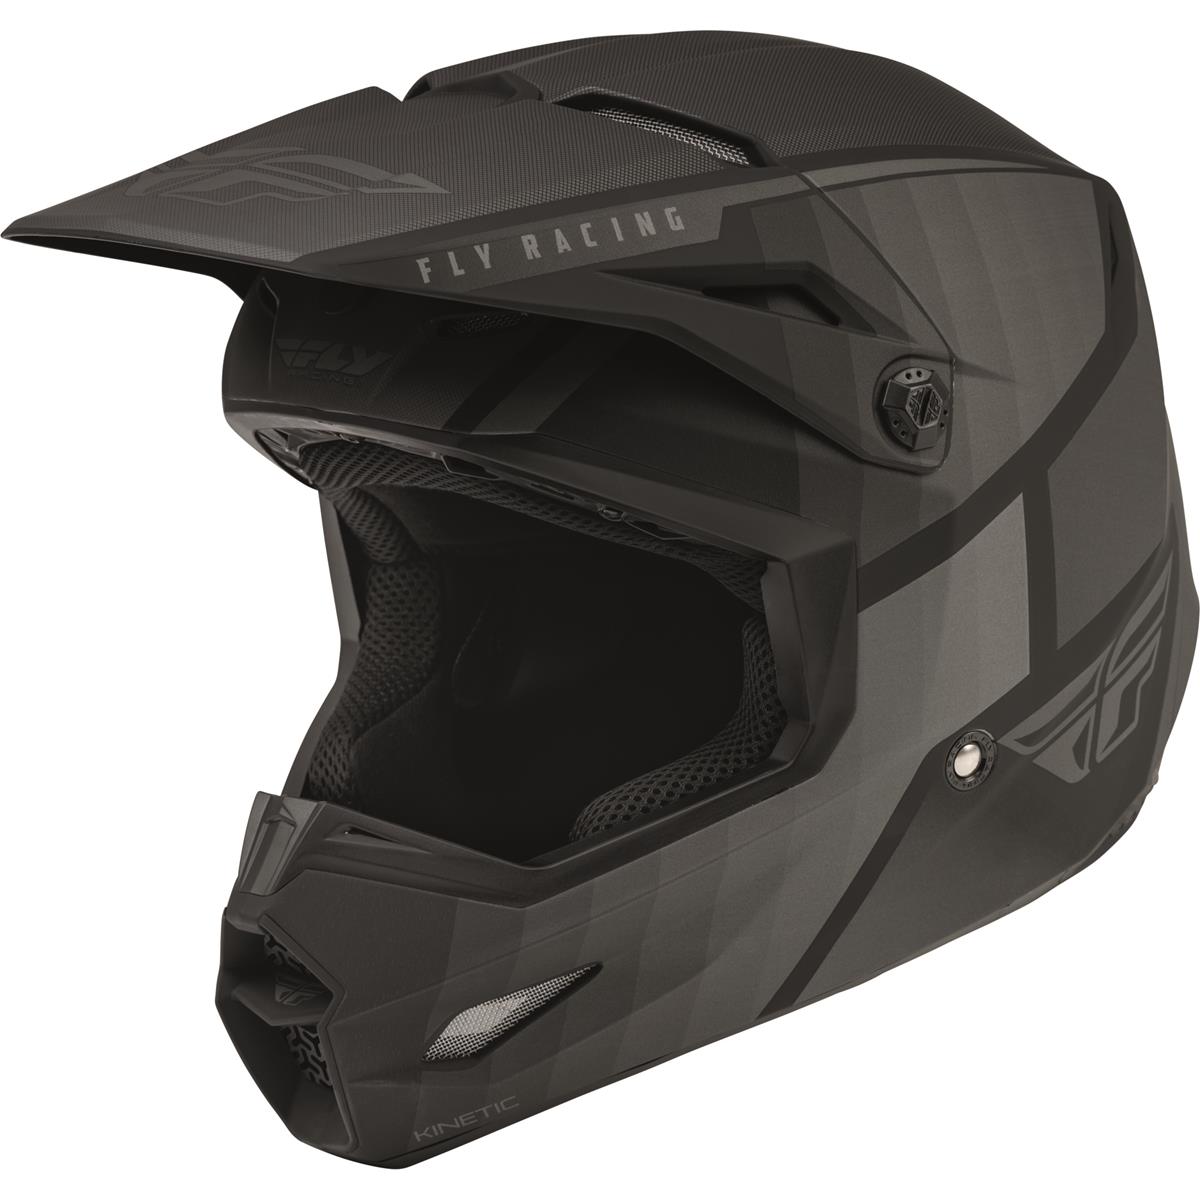 Fly Racing Motocross-Helm Kinetic Drift - Schwarz/Charcoal